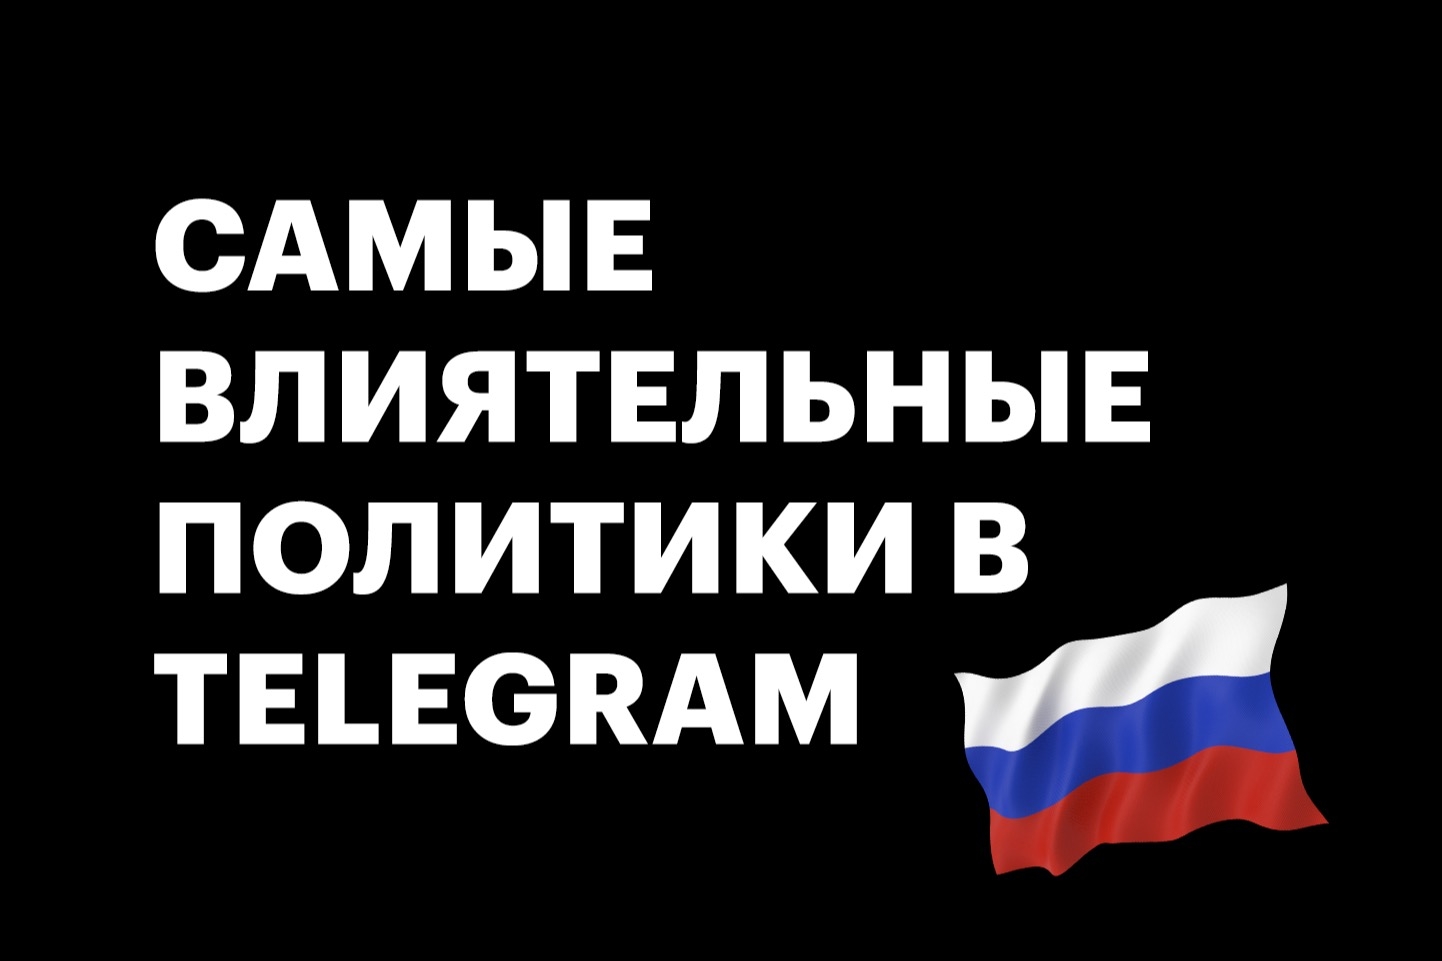 Новая политическая открытость. Подборка самых популярных Telegram-каналов российских политиков